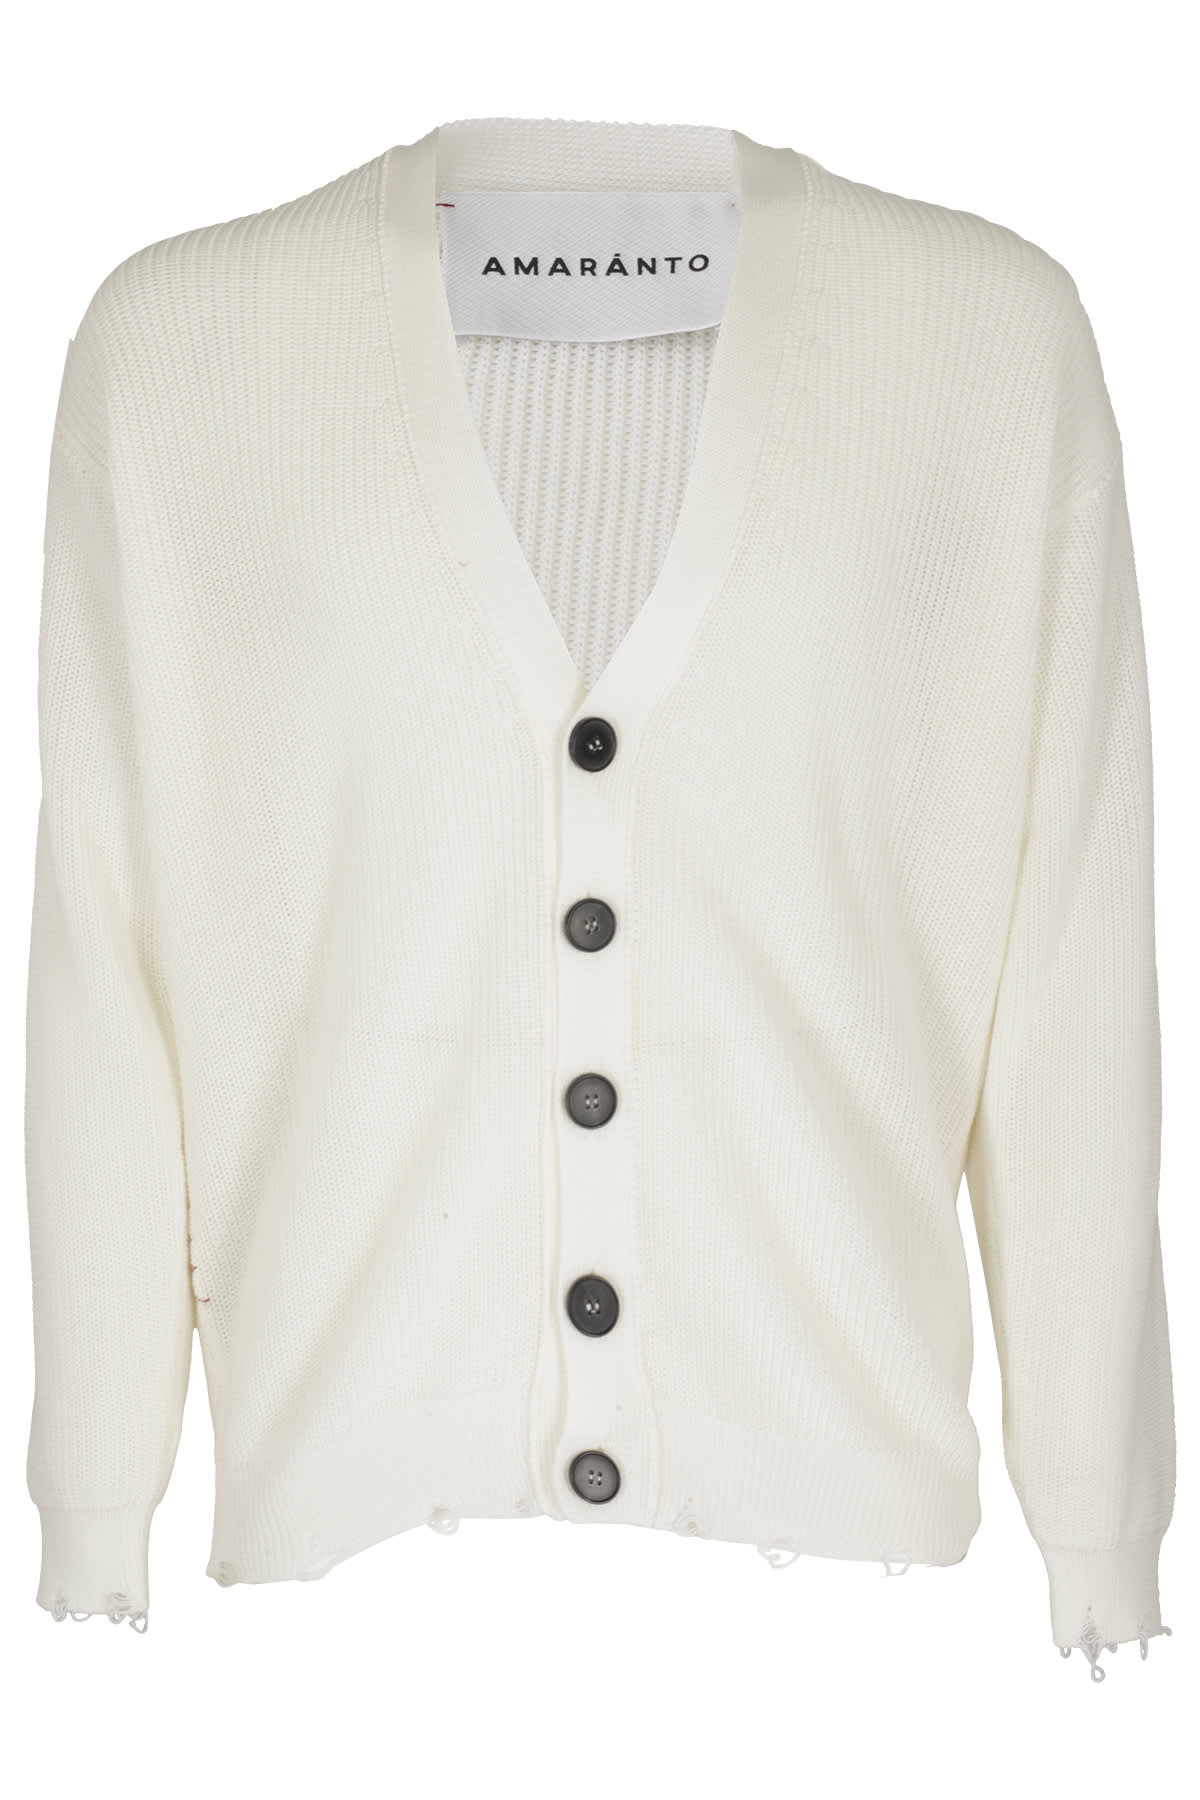 Amaranto Knitwear Cardigan In M Bianco